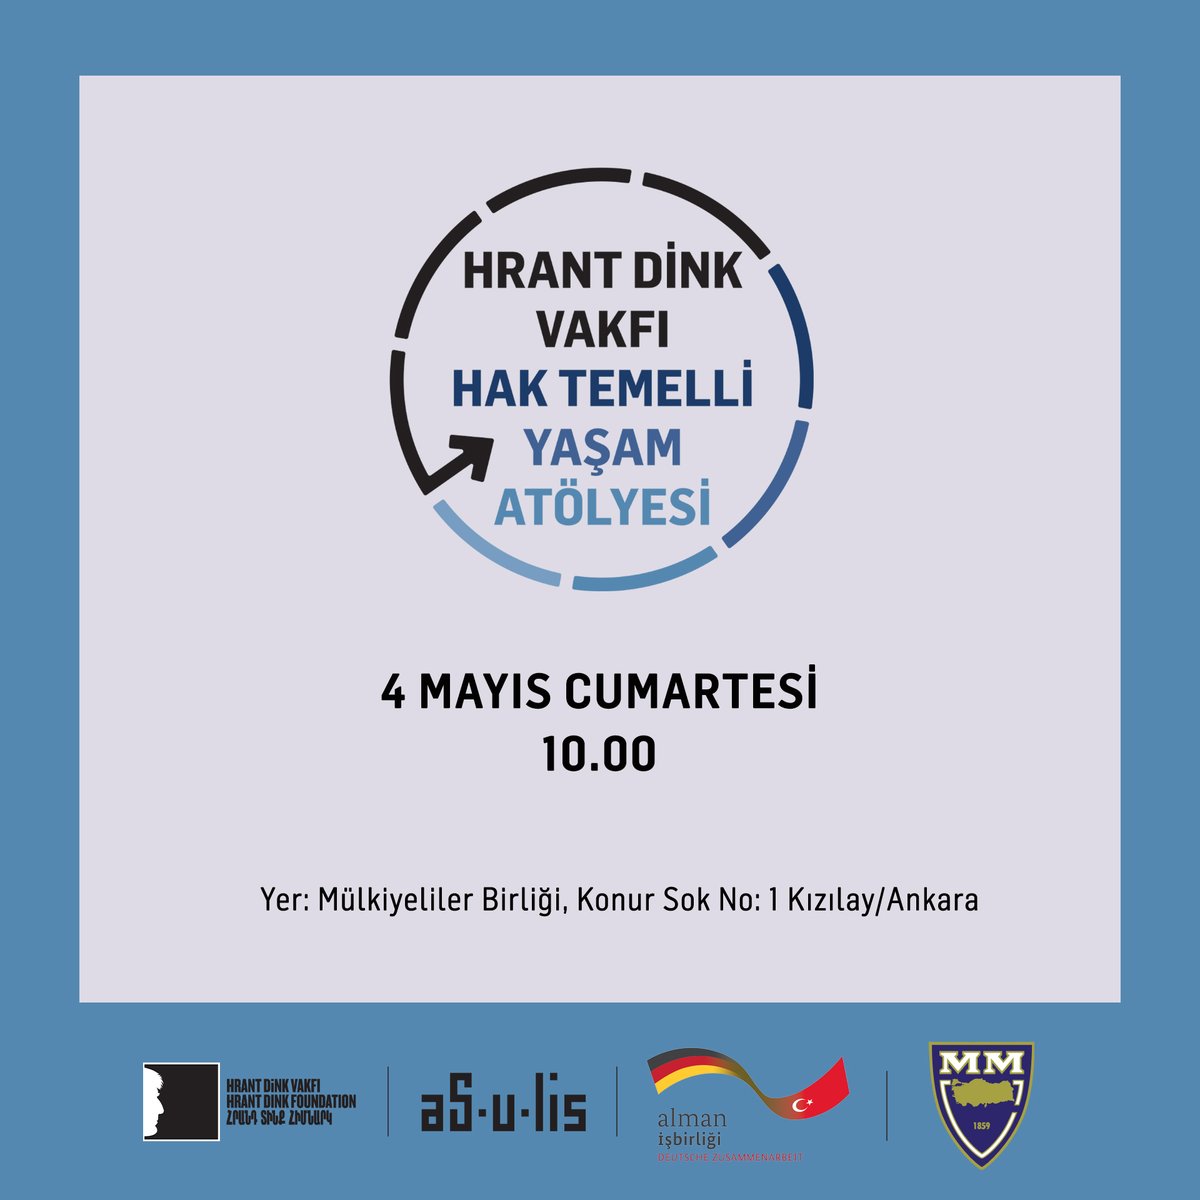 Hrant Dink Vakfı öğrenme programları, atölyeleriyle Ankara'da!📍 Mülkiyeliler Birliği ve Ka Görsel Kültür ve Sanatsal Düşünce İçin Mekân'da yapılacak olan atölyelere dair detaylı bilgi almak ve kayıt olmak için: shorturl.at/lsvGT